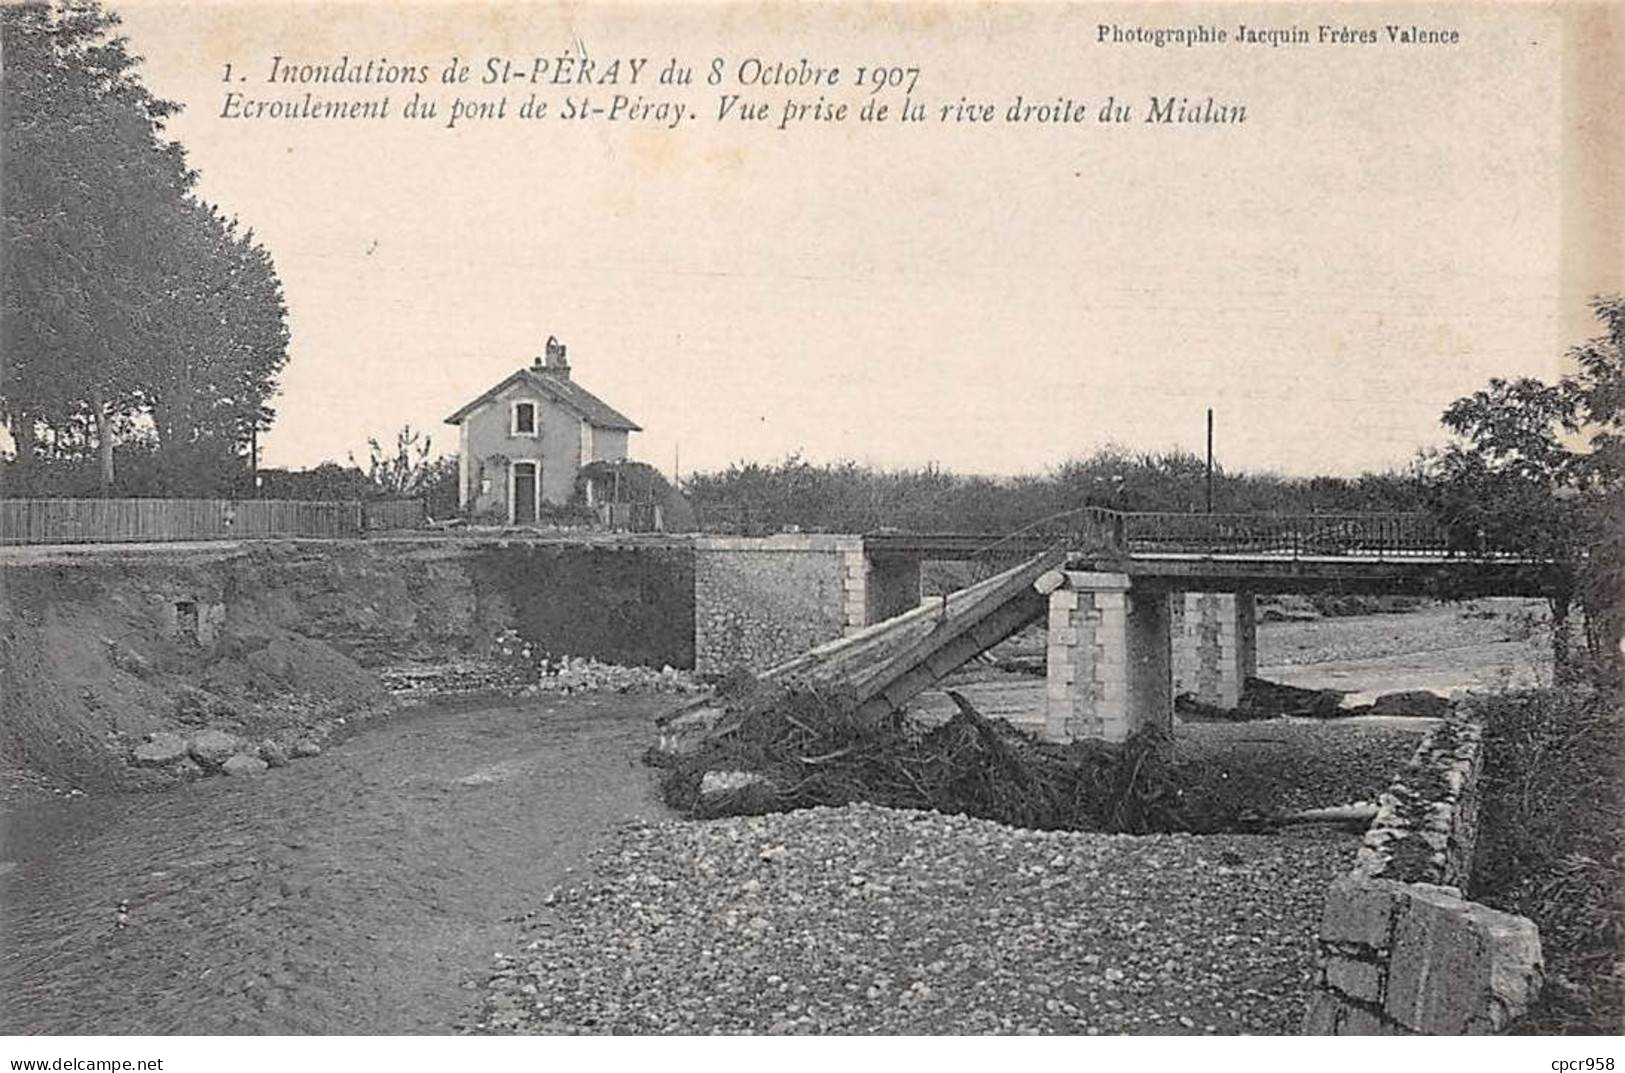 07 - ST PERAY - SAN45861 - Inondation Du 8 Octobre 1907 - Ecroulement Du Pont - Vue Prise De La Rive Droite De Mialan - Saint Péray